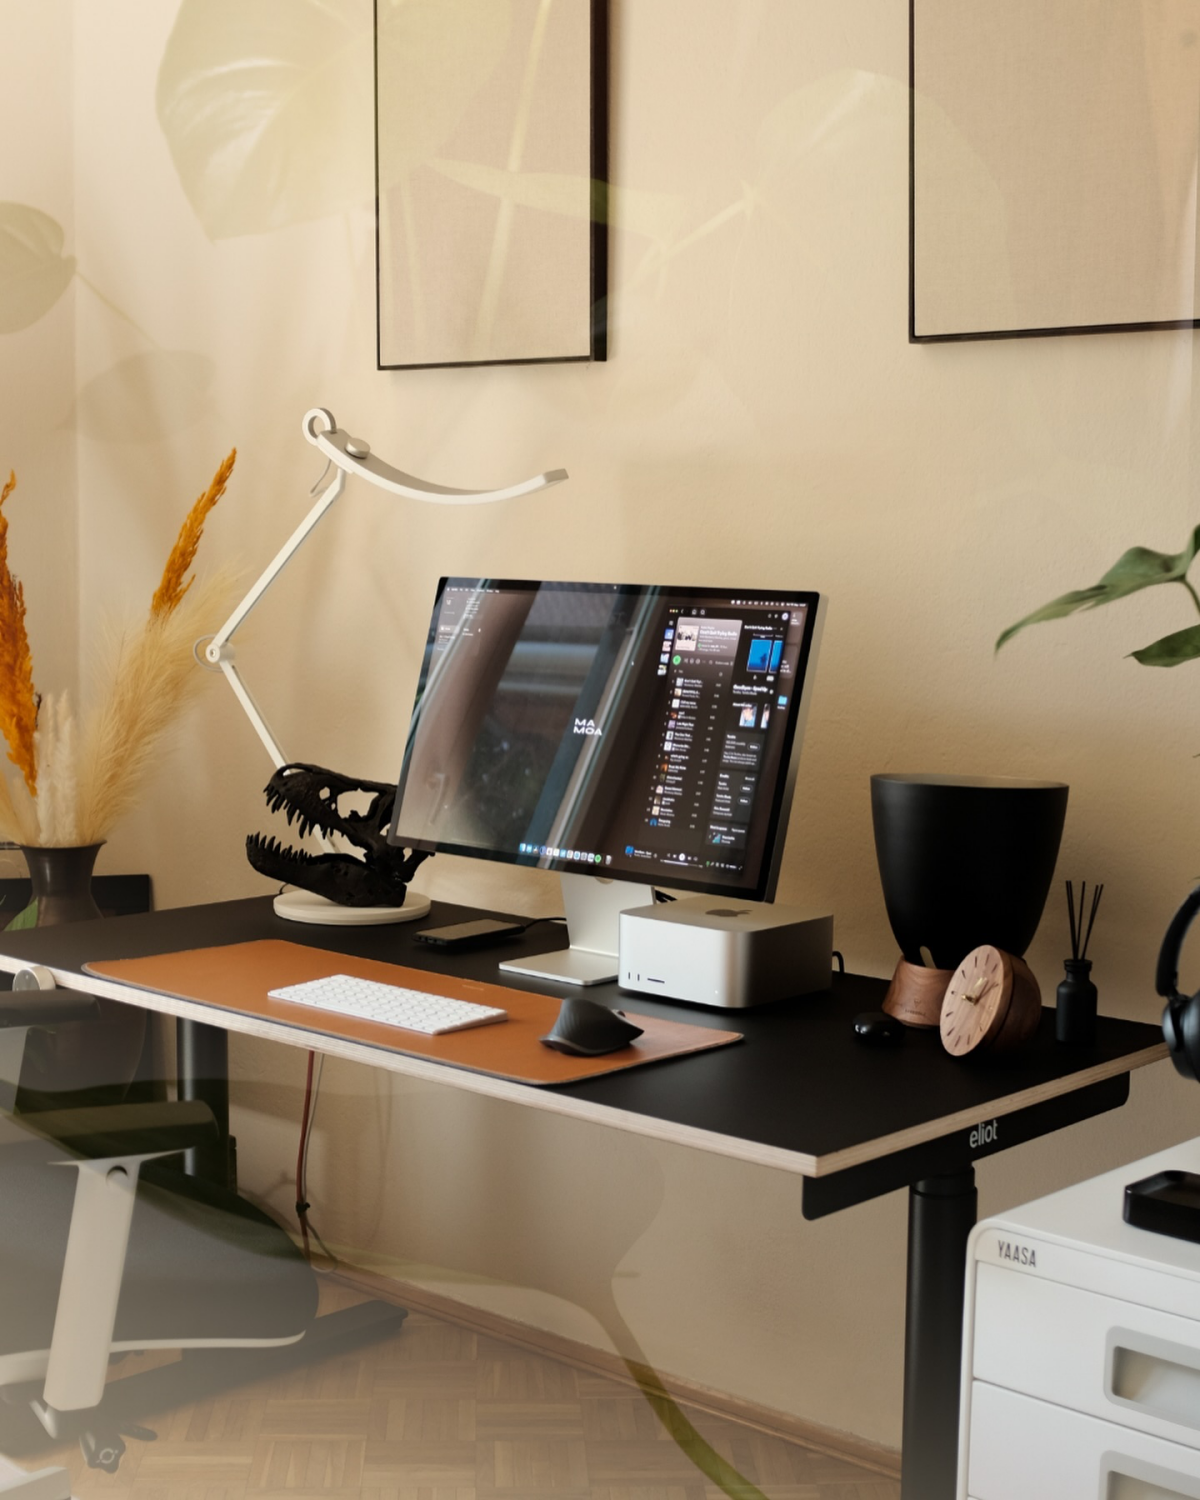 aesthetic desk setup for men